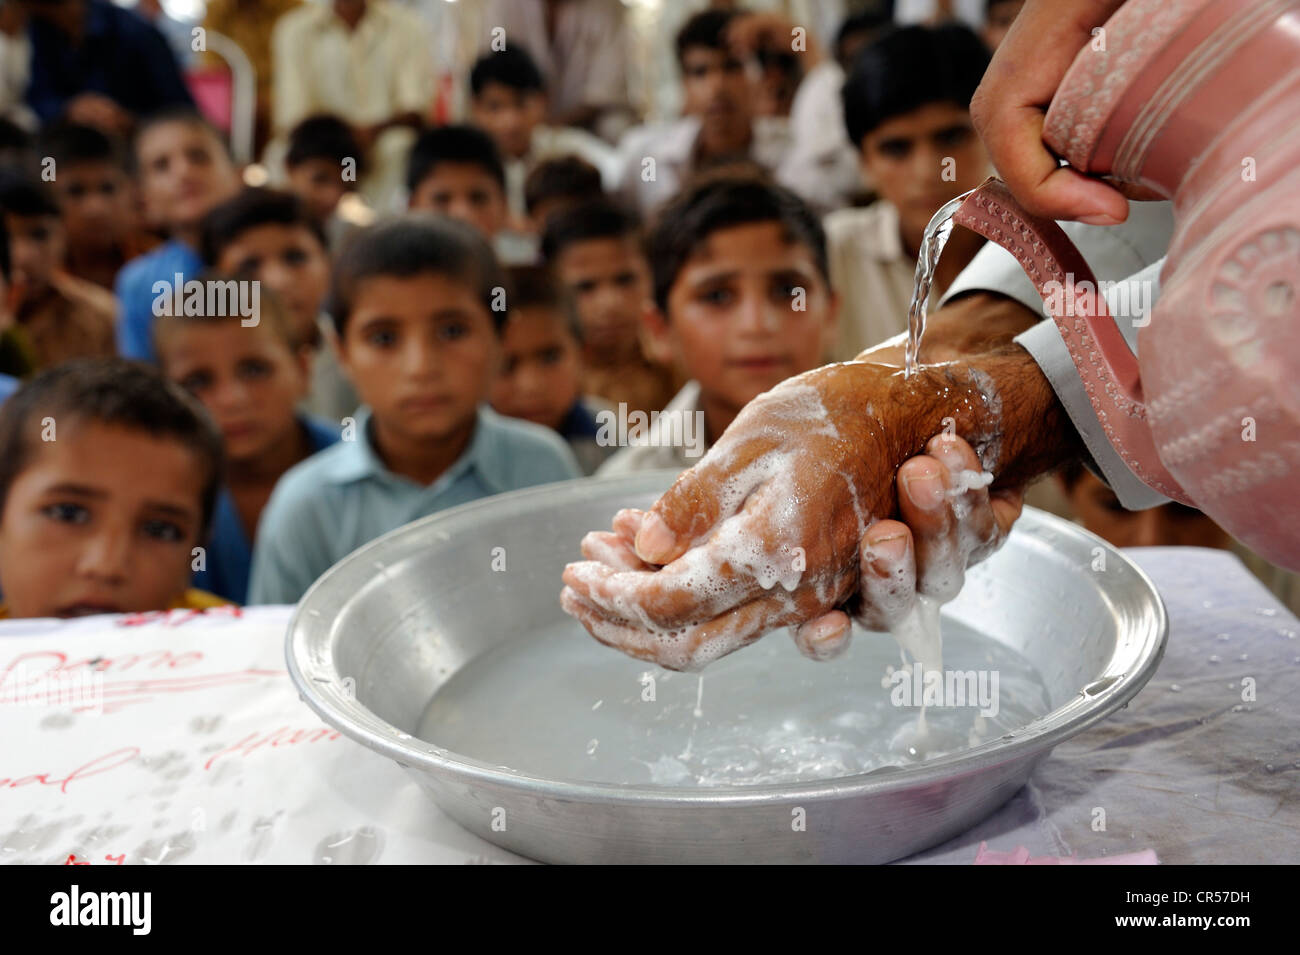 La educación en materia de higiene para los hombres y los niños, las instrucciones para el lavado de manos, Wala Lashari village, Punjab, Pakistán, Asia Foto de stock